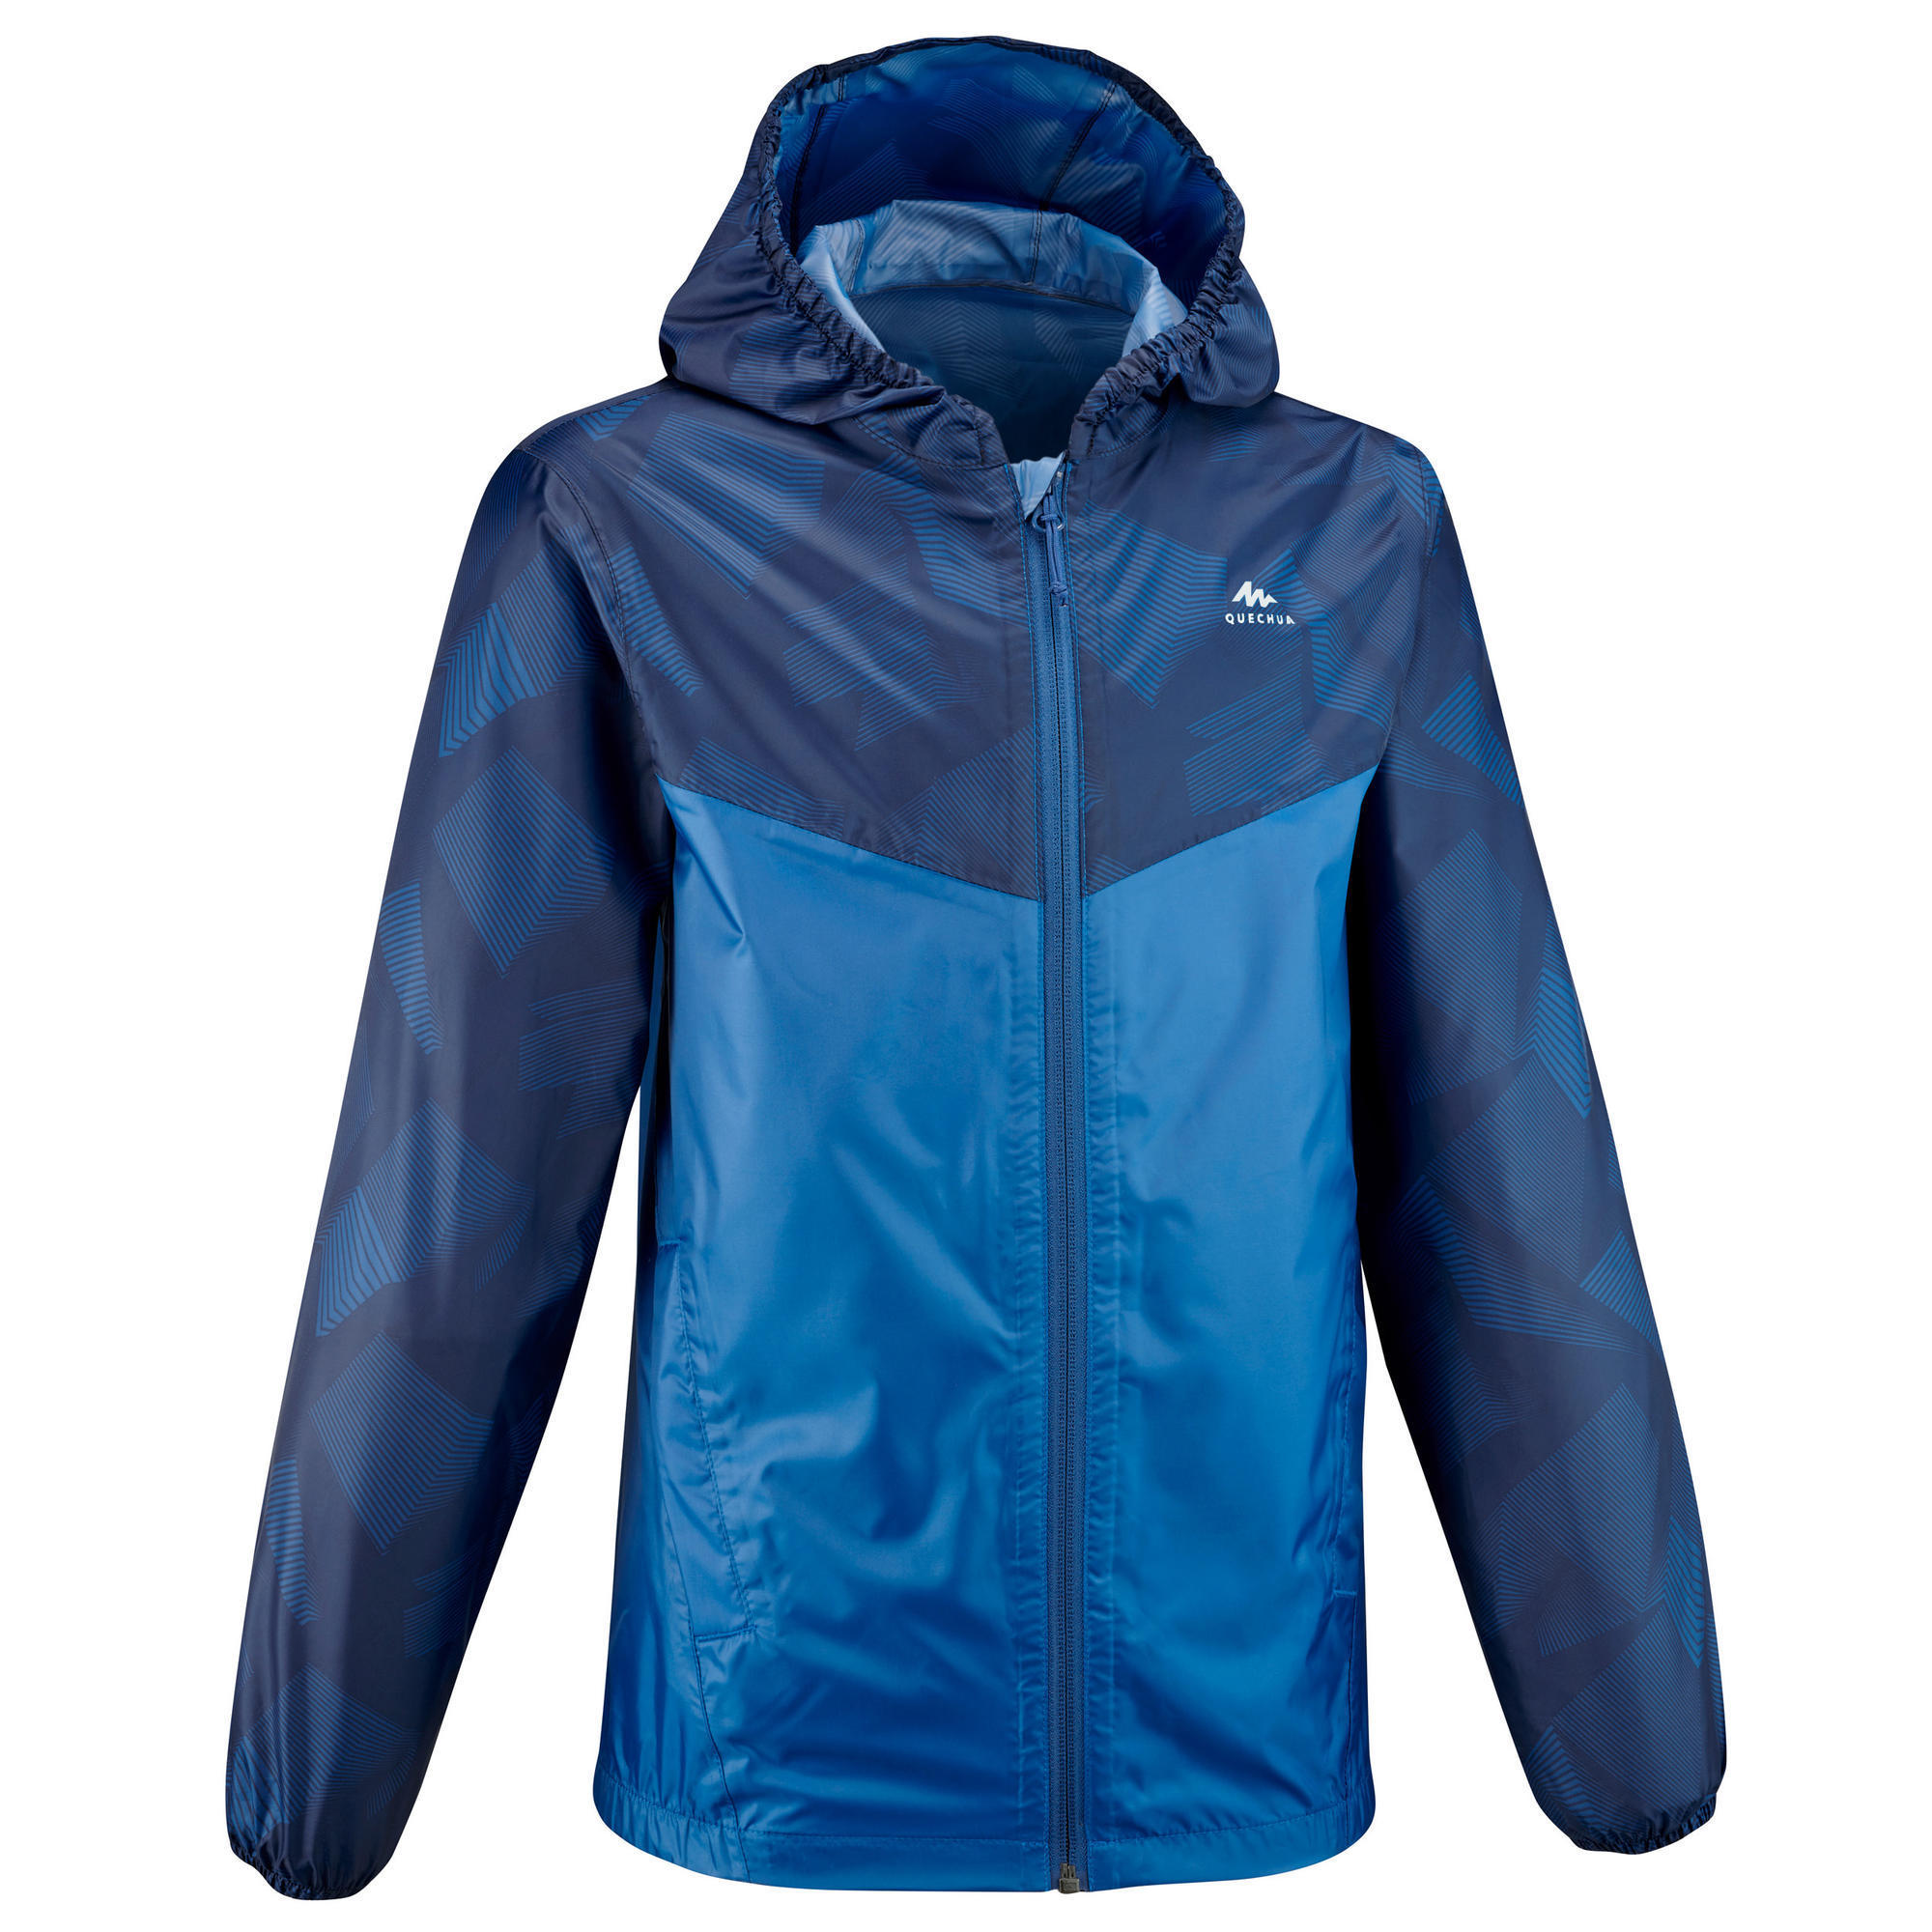 Jachetă Impermeabilă Drumeție la munte MH150 Albastru Băieți 7-15 ani decathlon.ro  Imbracaminte trekking si drumetie